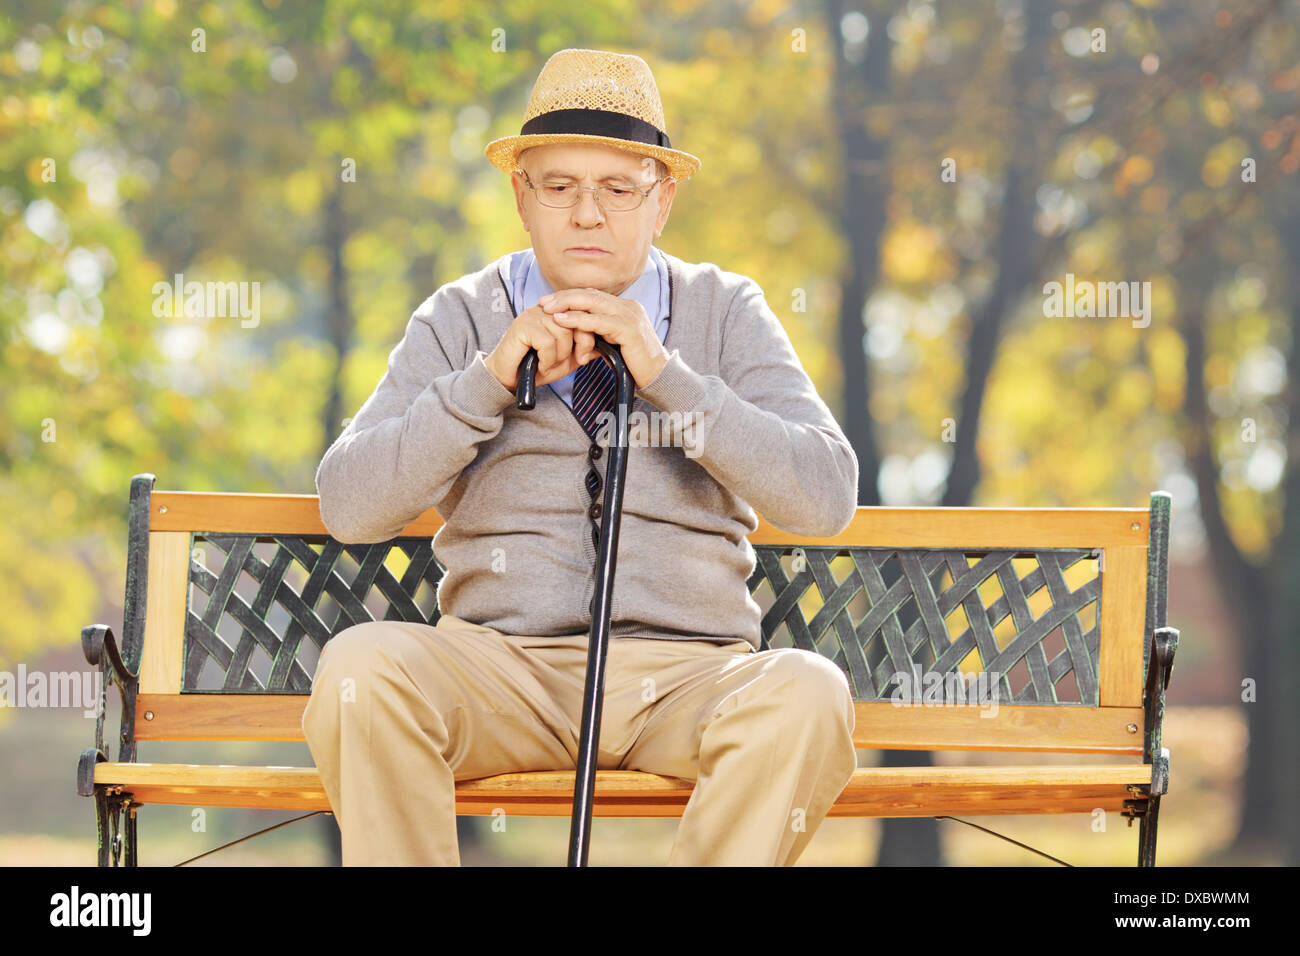 Happy man avec une canne assis sur un banc dans un parc Banque D'Images